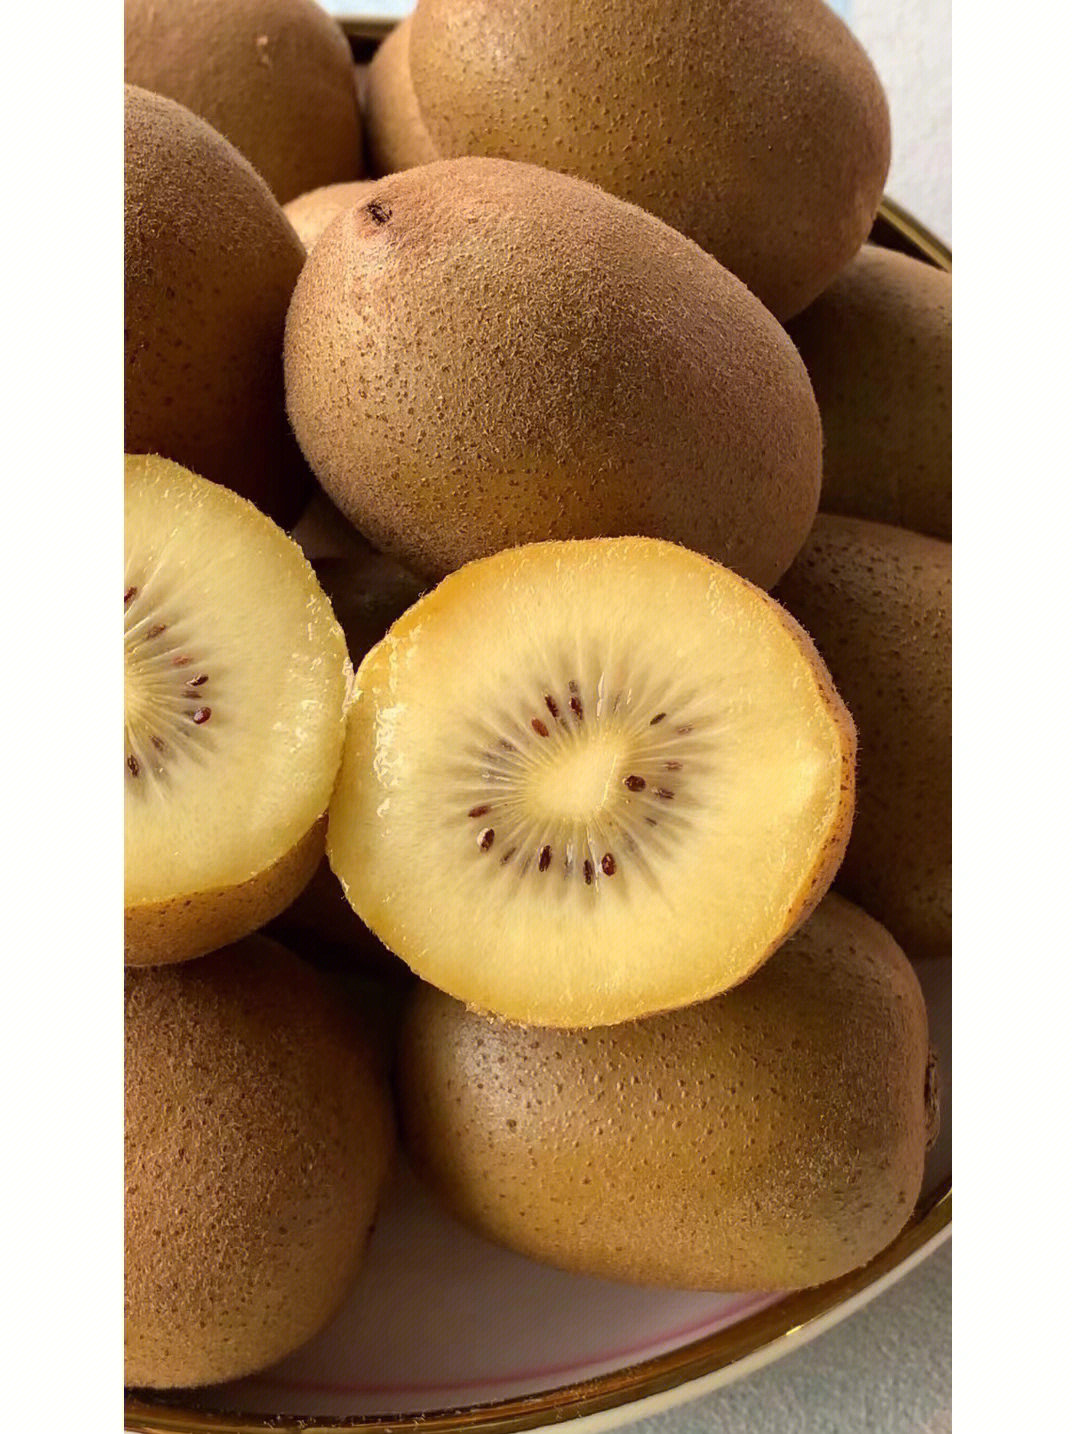 黄心猕猴桃是一种新西兰品种的猕猴桃07和红心猕猴桃一样,是富含